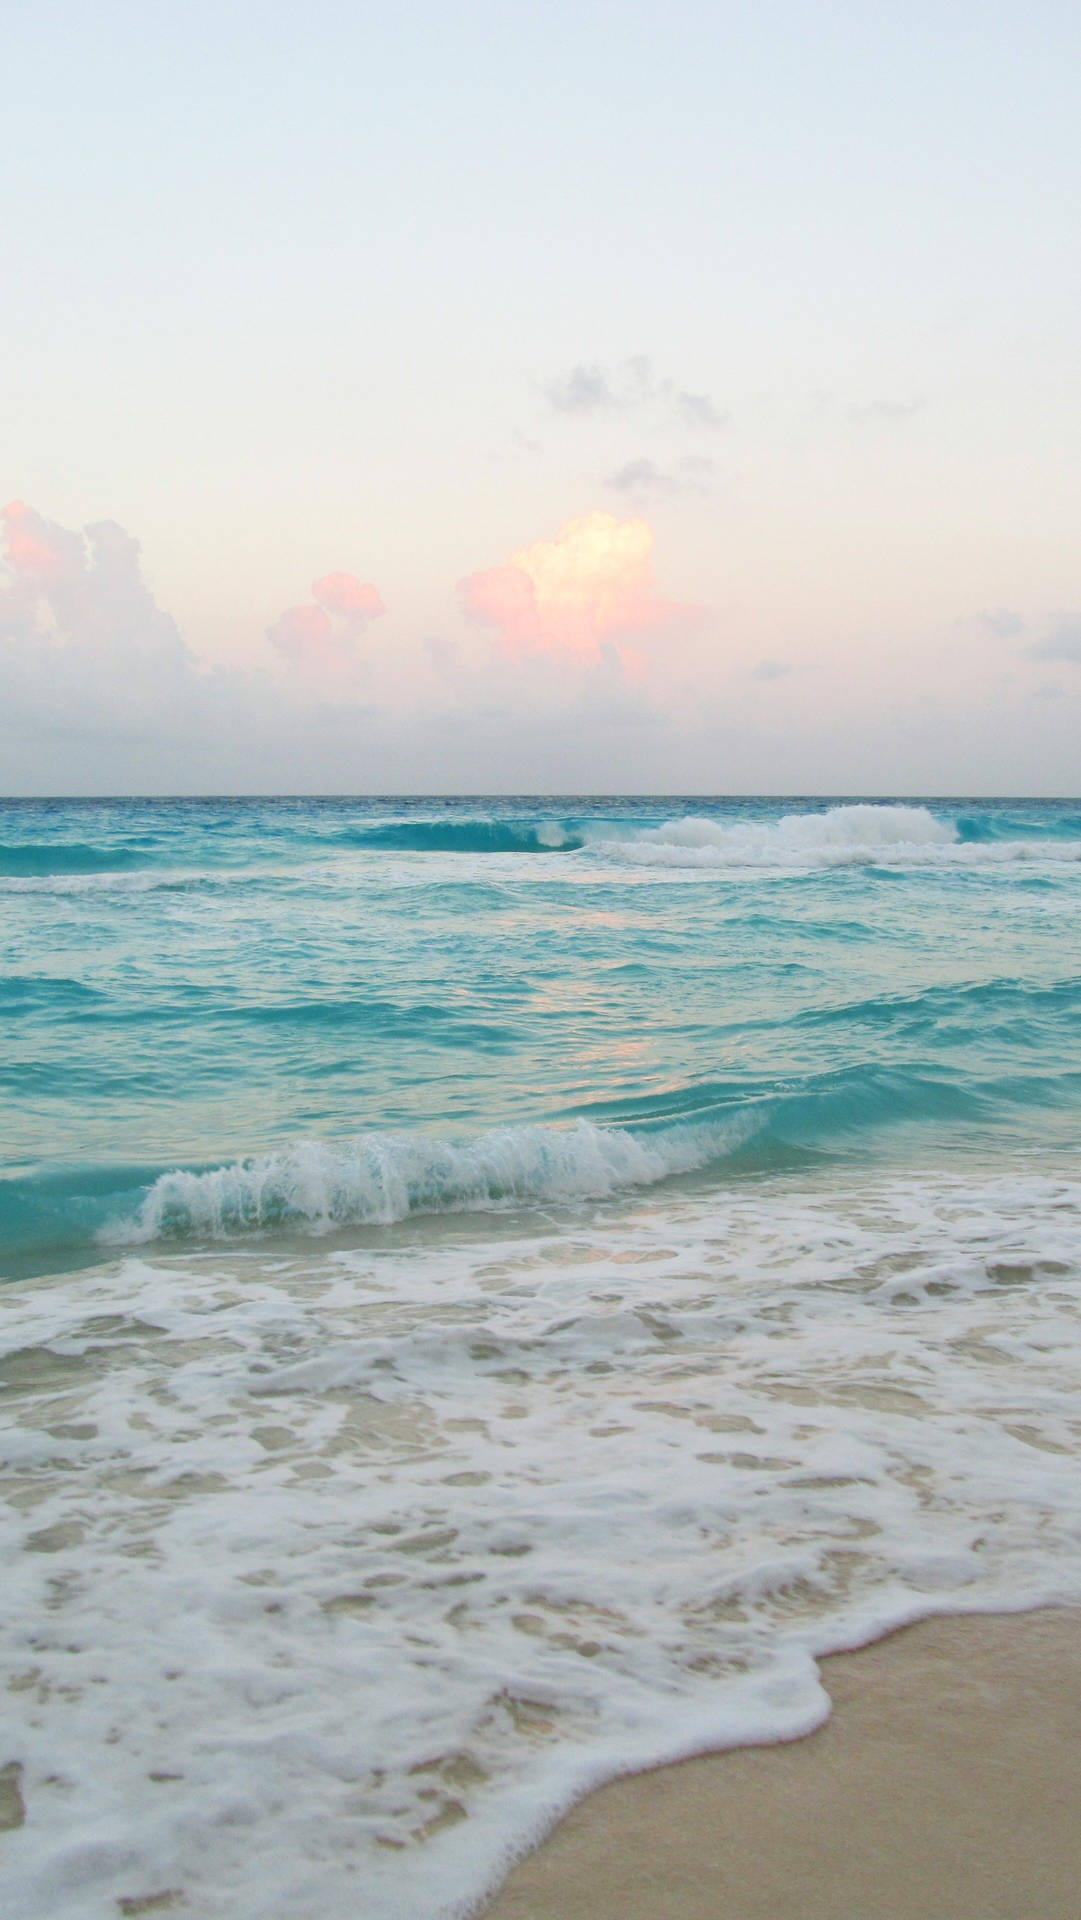 A Stunning Ocean Wave Overlooking A Beautiful Beach. Background